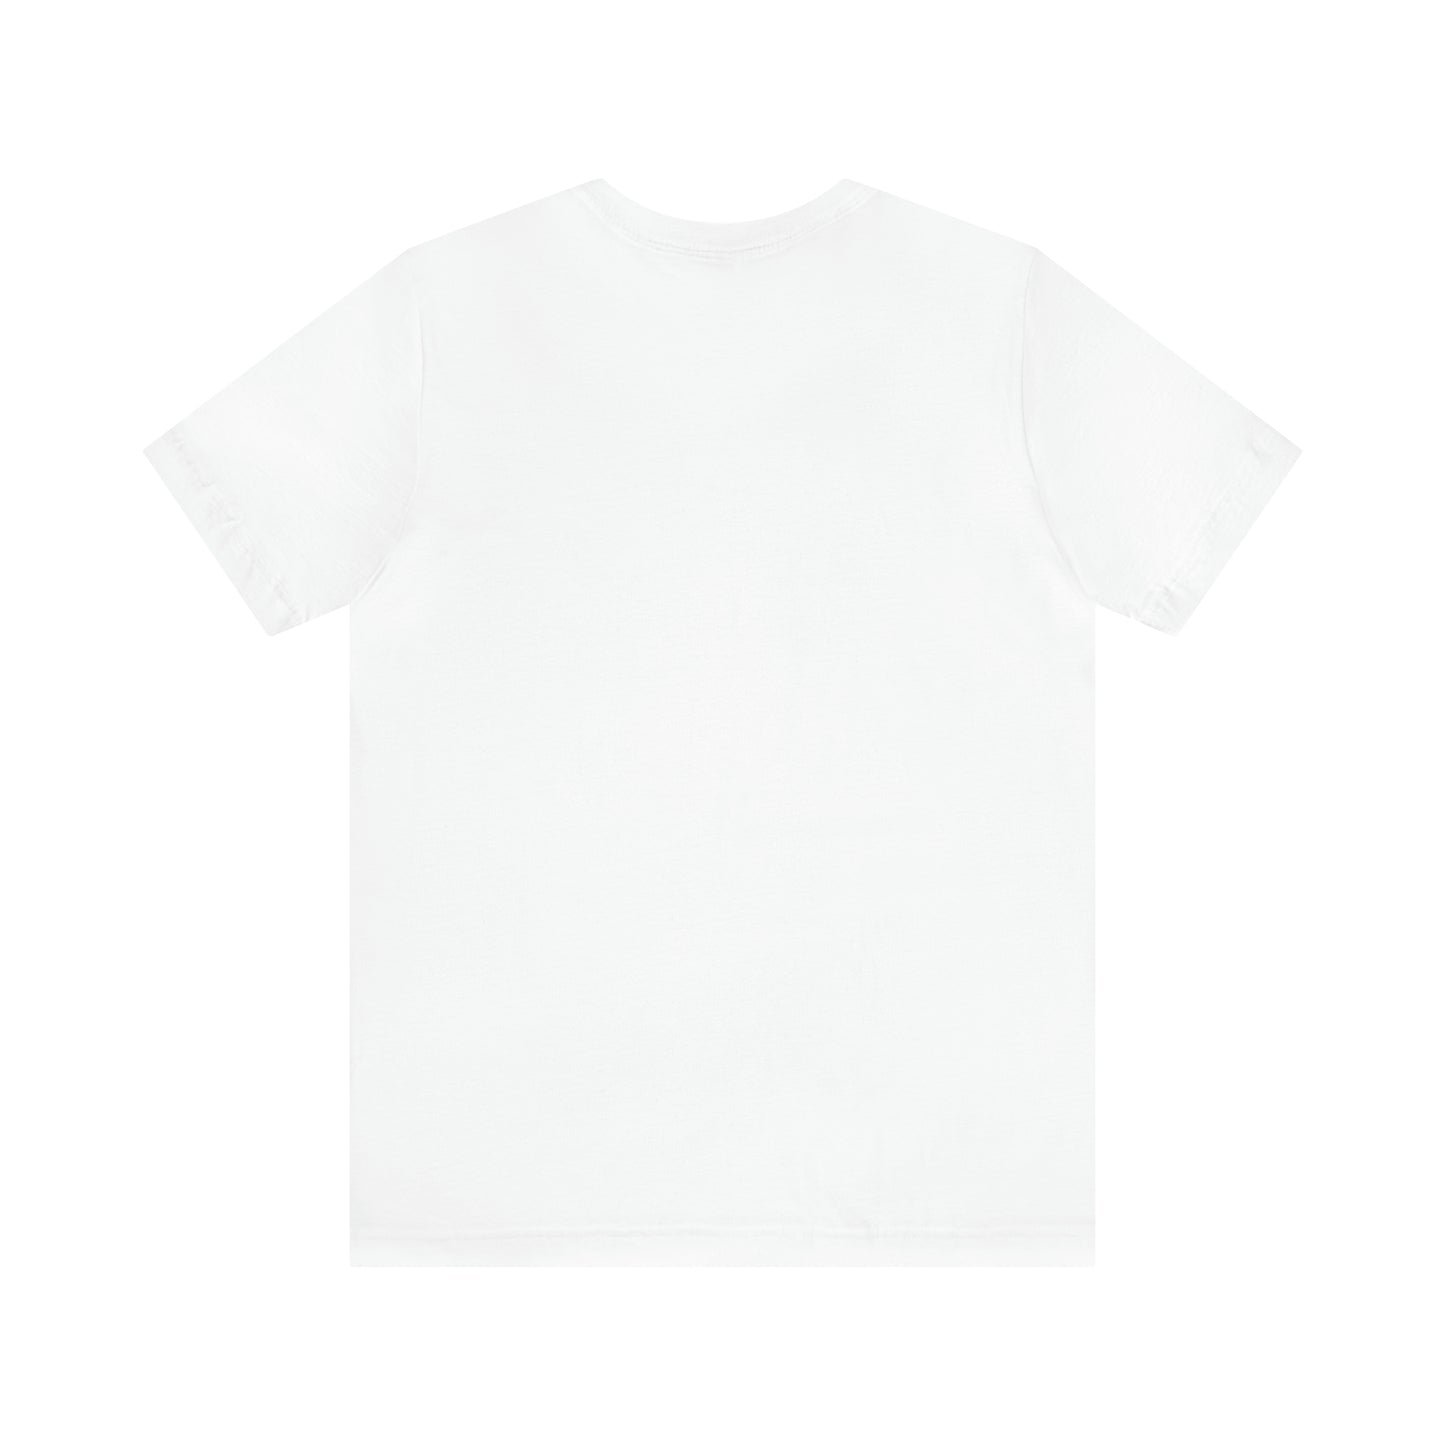 Mañana Sera Bonito T-Shirt